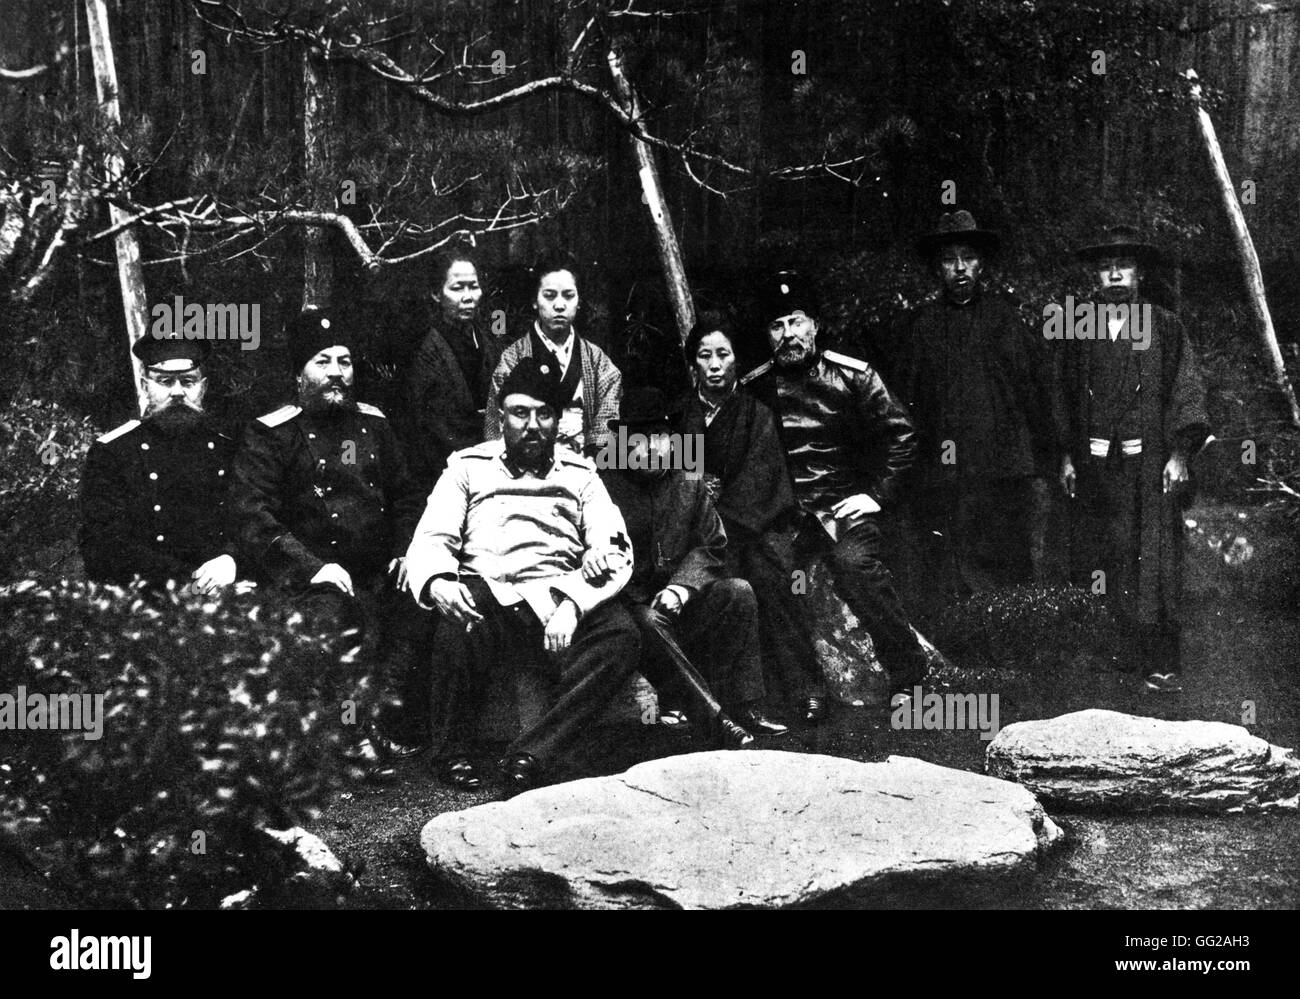 Nach der Niederlage in Port Arthur, russische Offiziere, Gefangene auf Bewährung 1905 Russland - Russo-japanischer Krieg Stockfoto